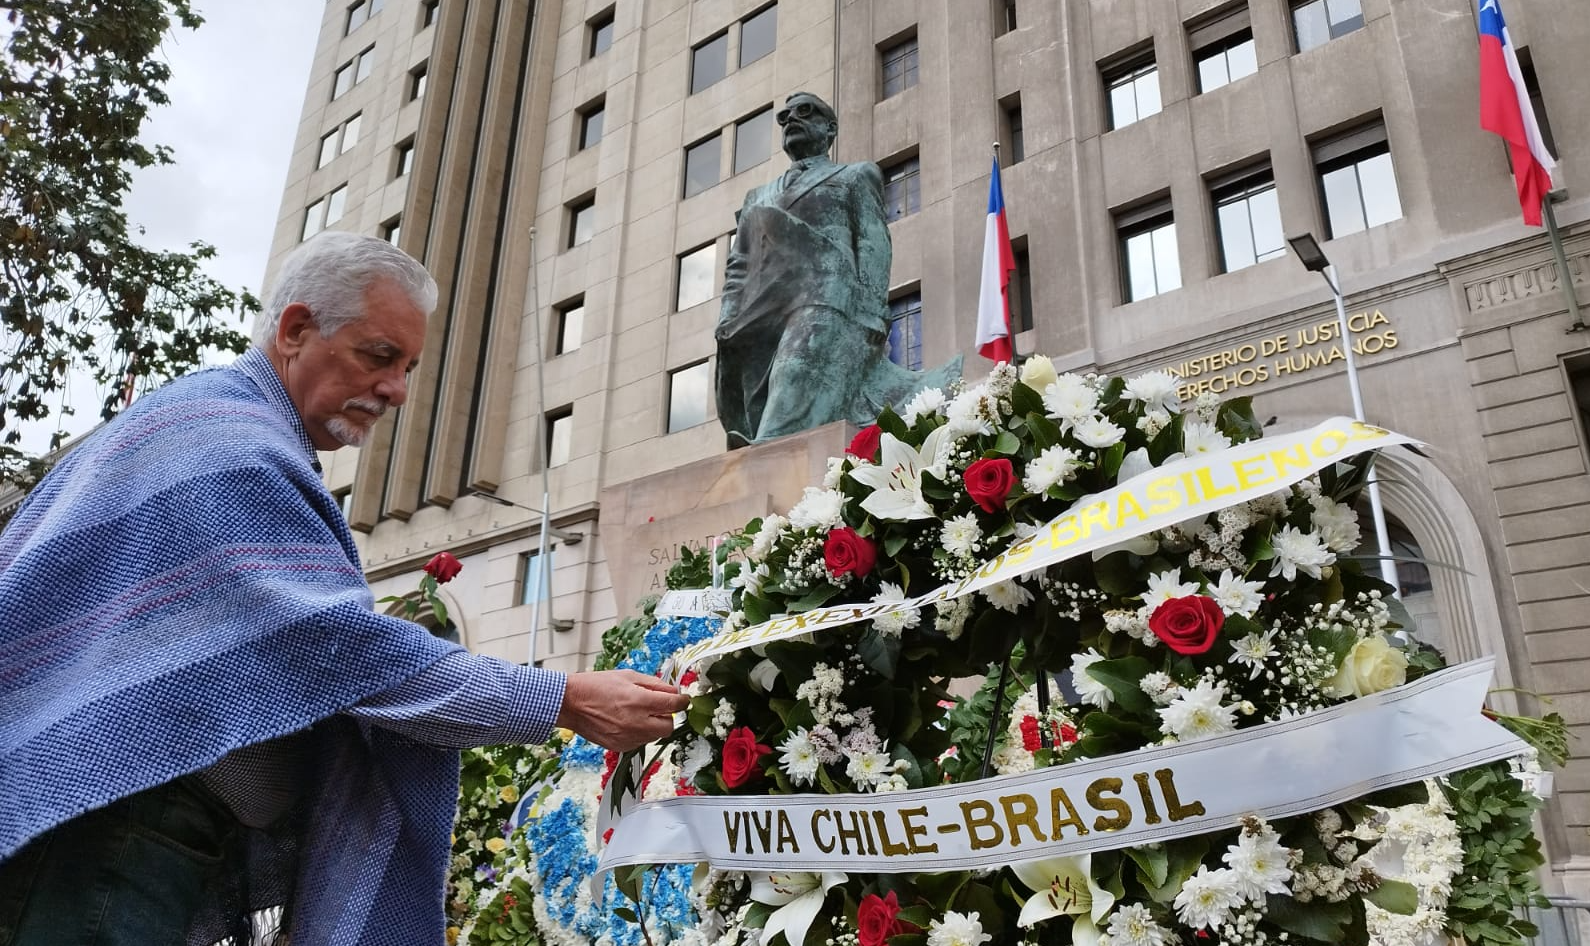 Ex-exilados brasileiros terminaram sua visita ao país onde viveram o golpe de Estado em 1973 com uma homenagem ao presidente socialista chileno